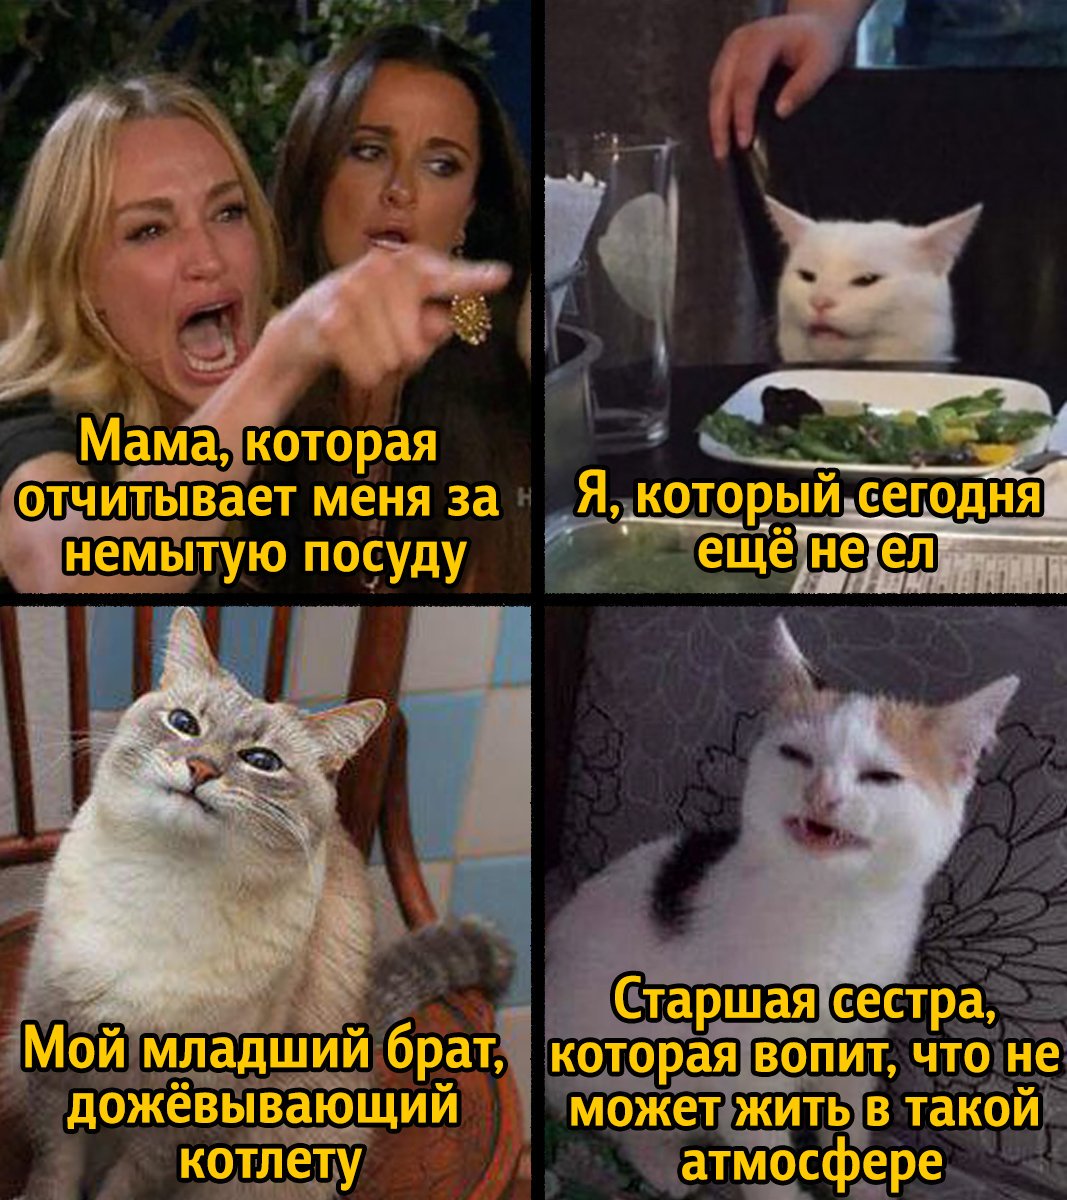 https://medialeaks.ru/2609amv-table-cat-meme-evolution/?utm_source=twitmdlk...